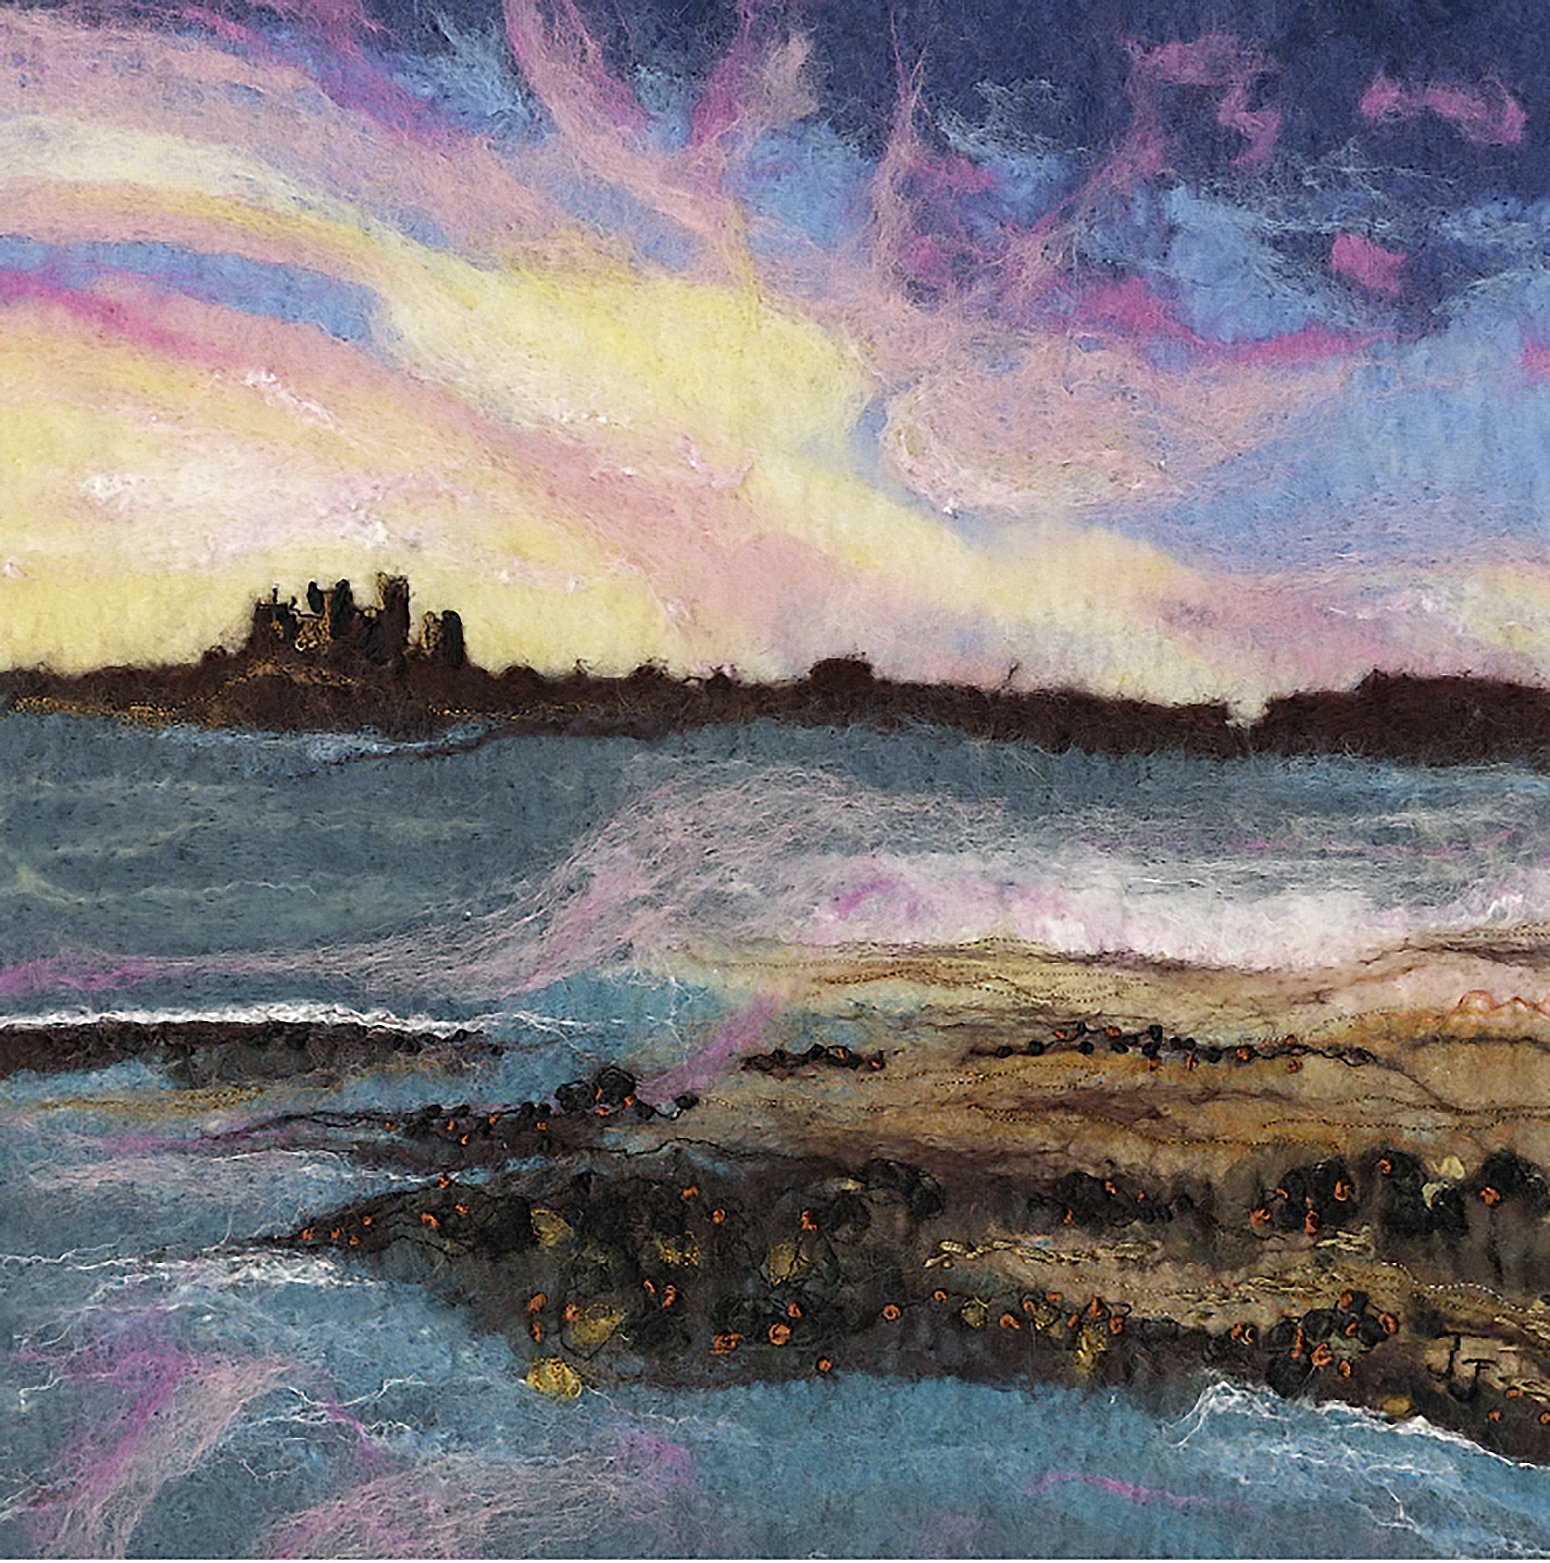 holy-island-sunset-bamburghcastle-72dpi.jpg